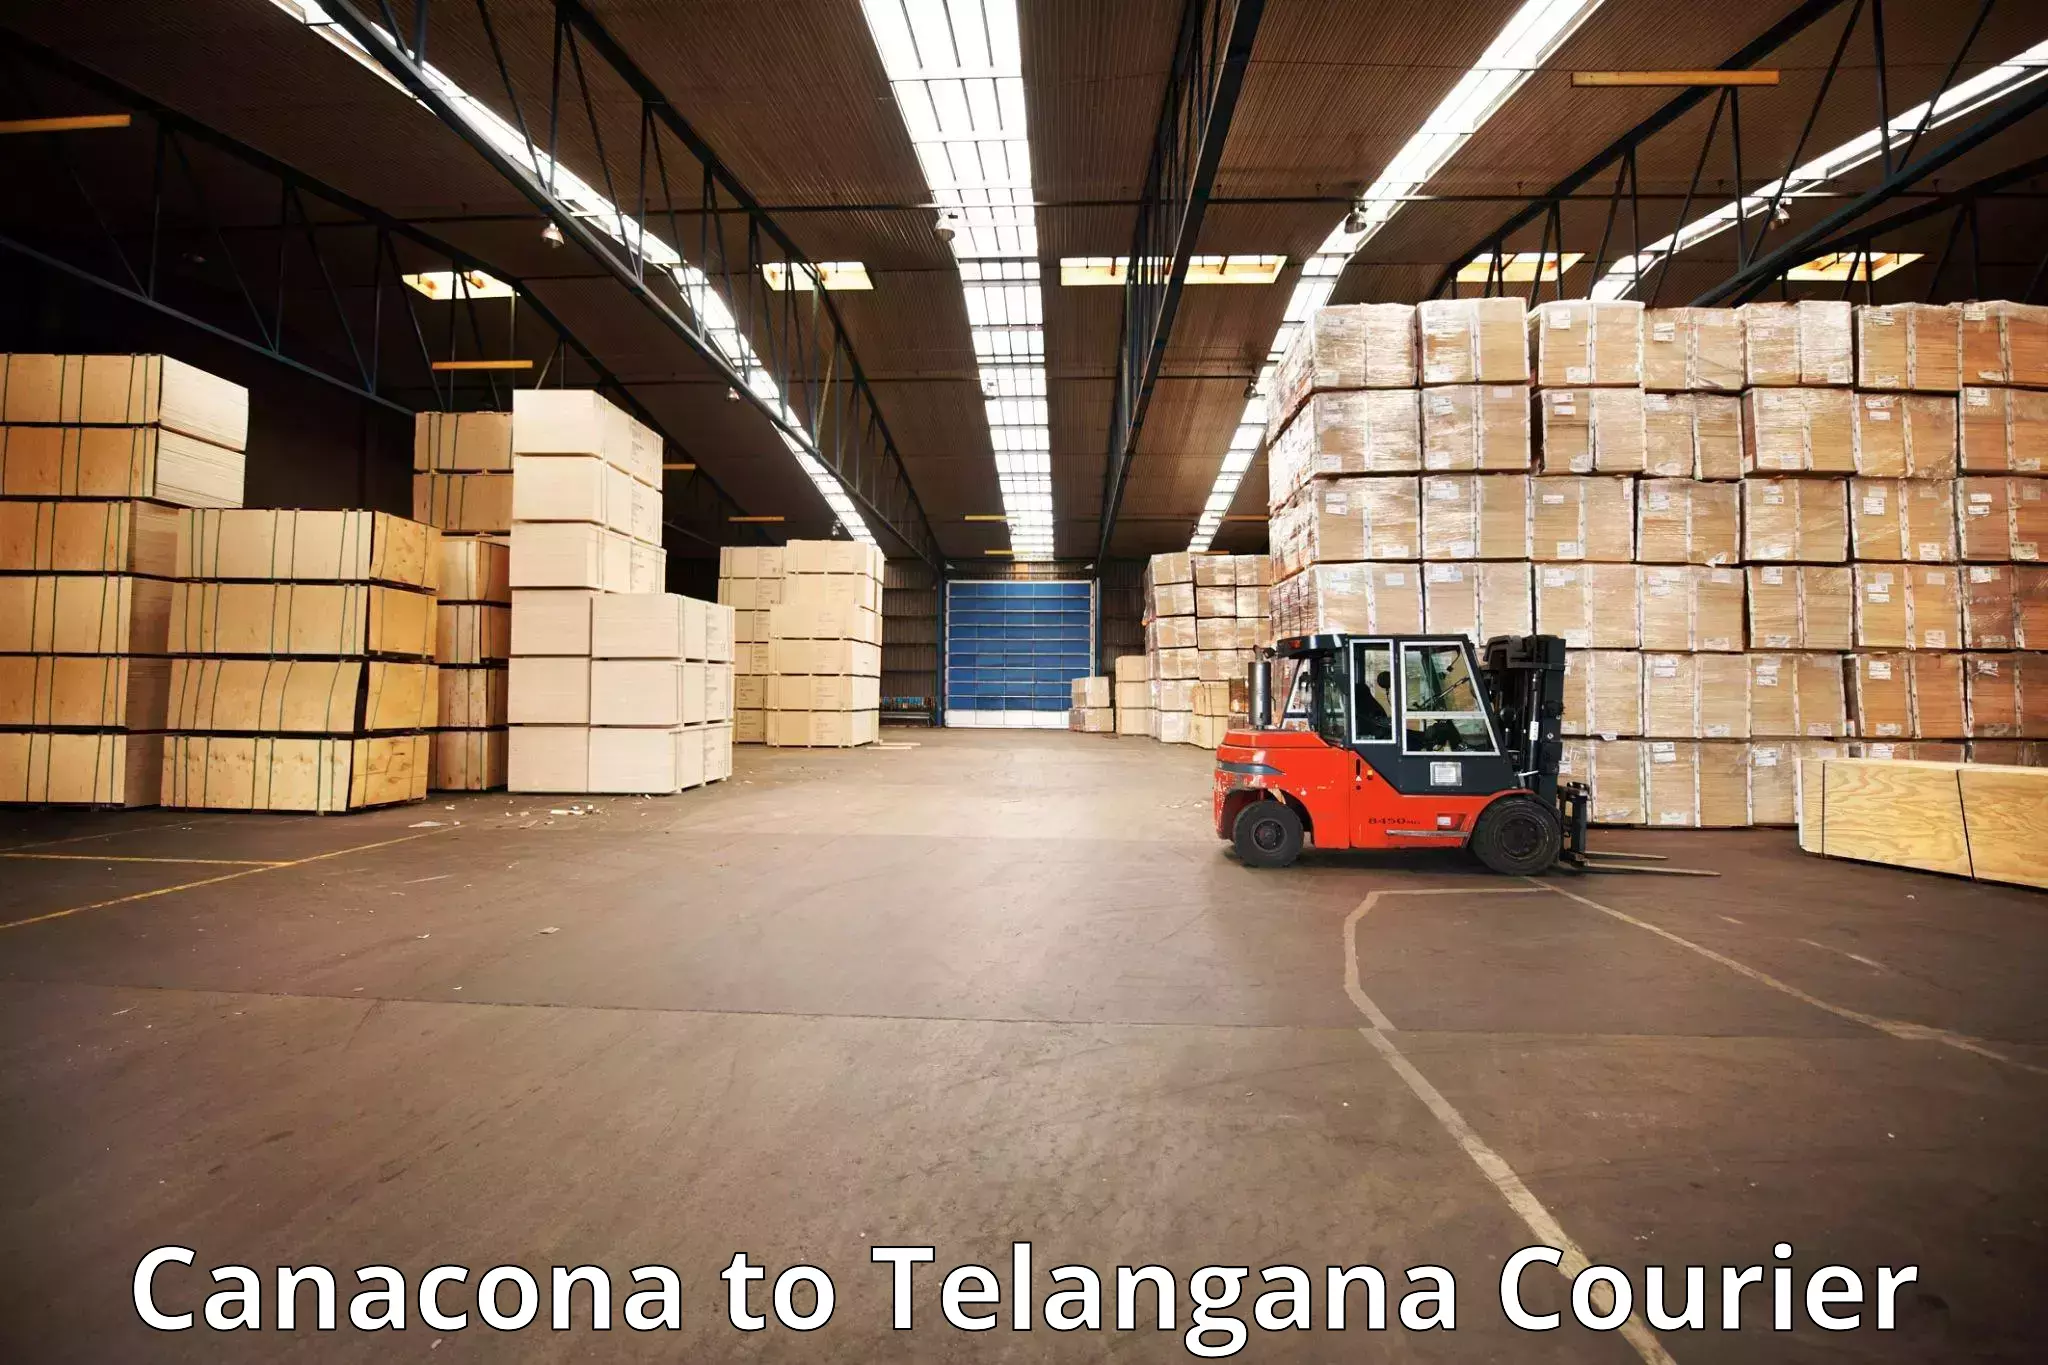 Luggage transport company Canacona to University of Hyderabad